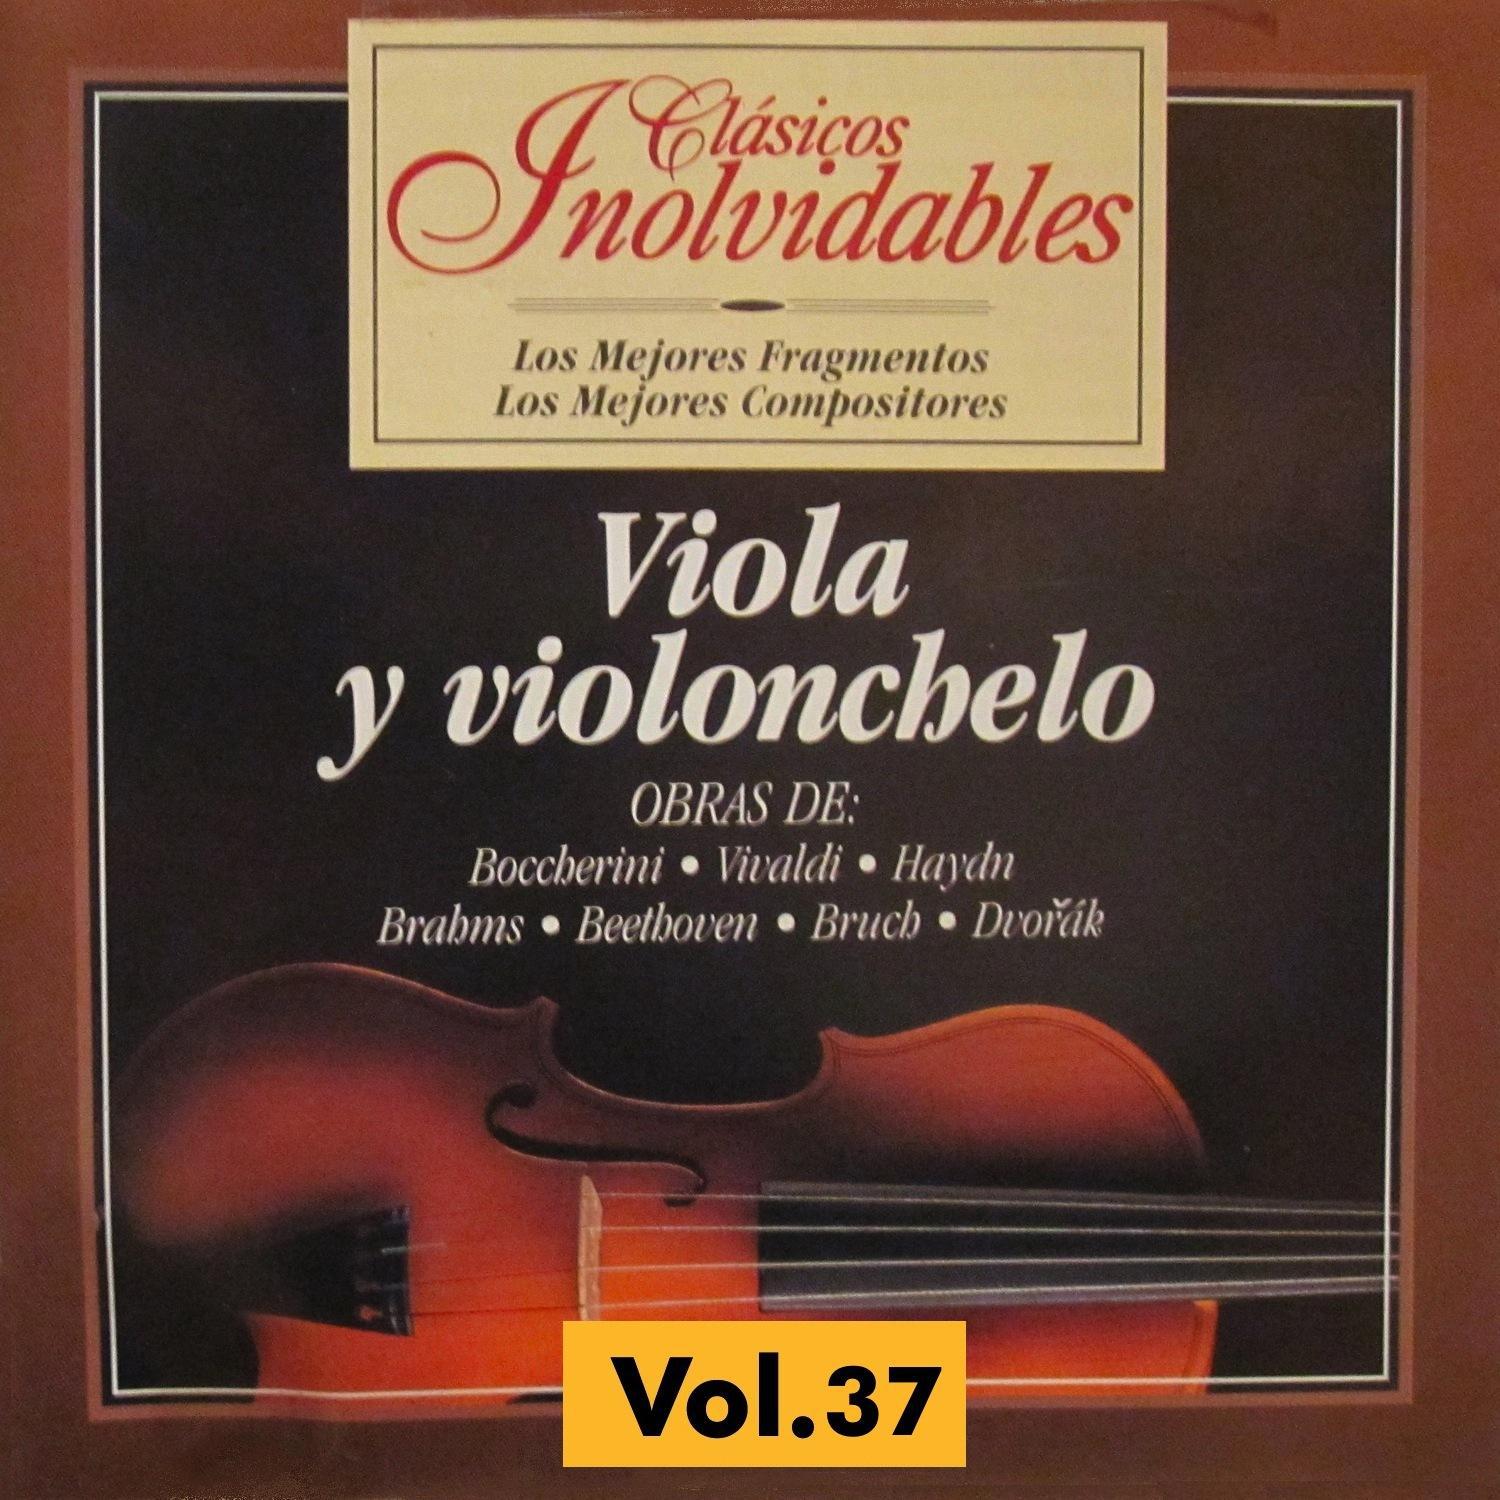 Clásicos Inolvidables Vol. 37, Viola y Violoncelo